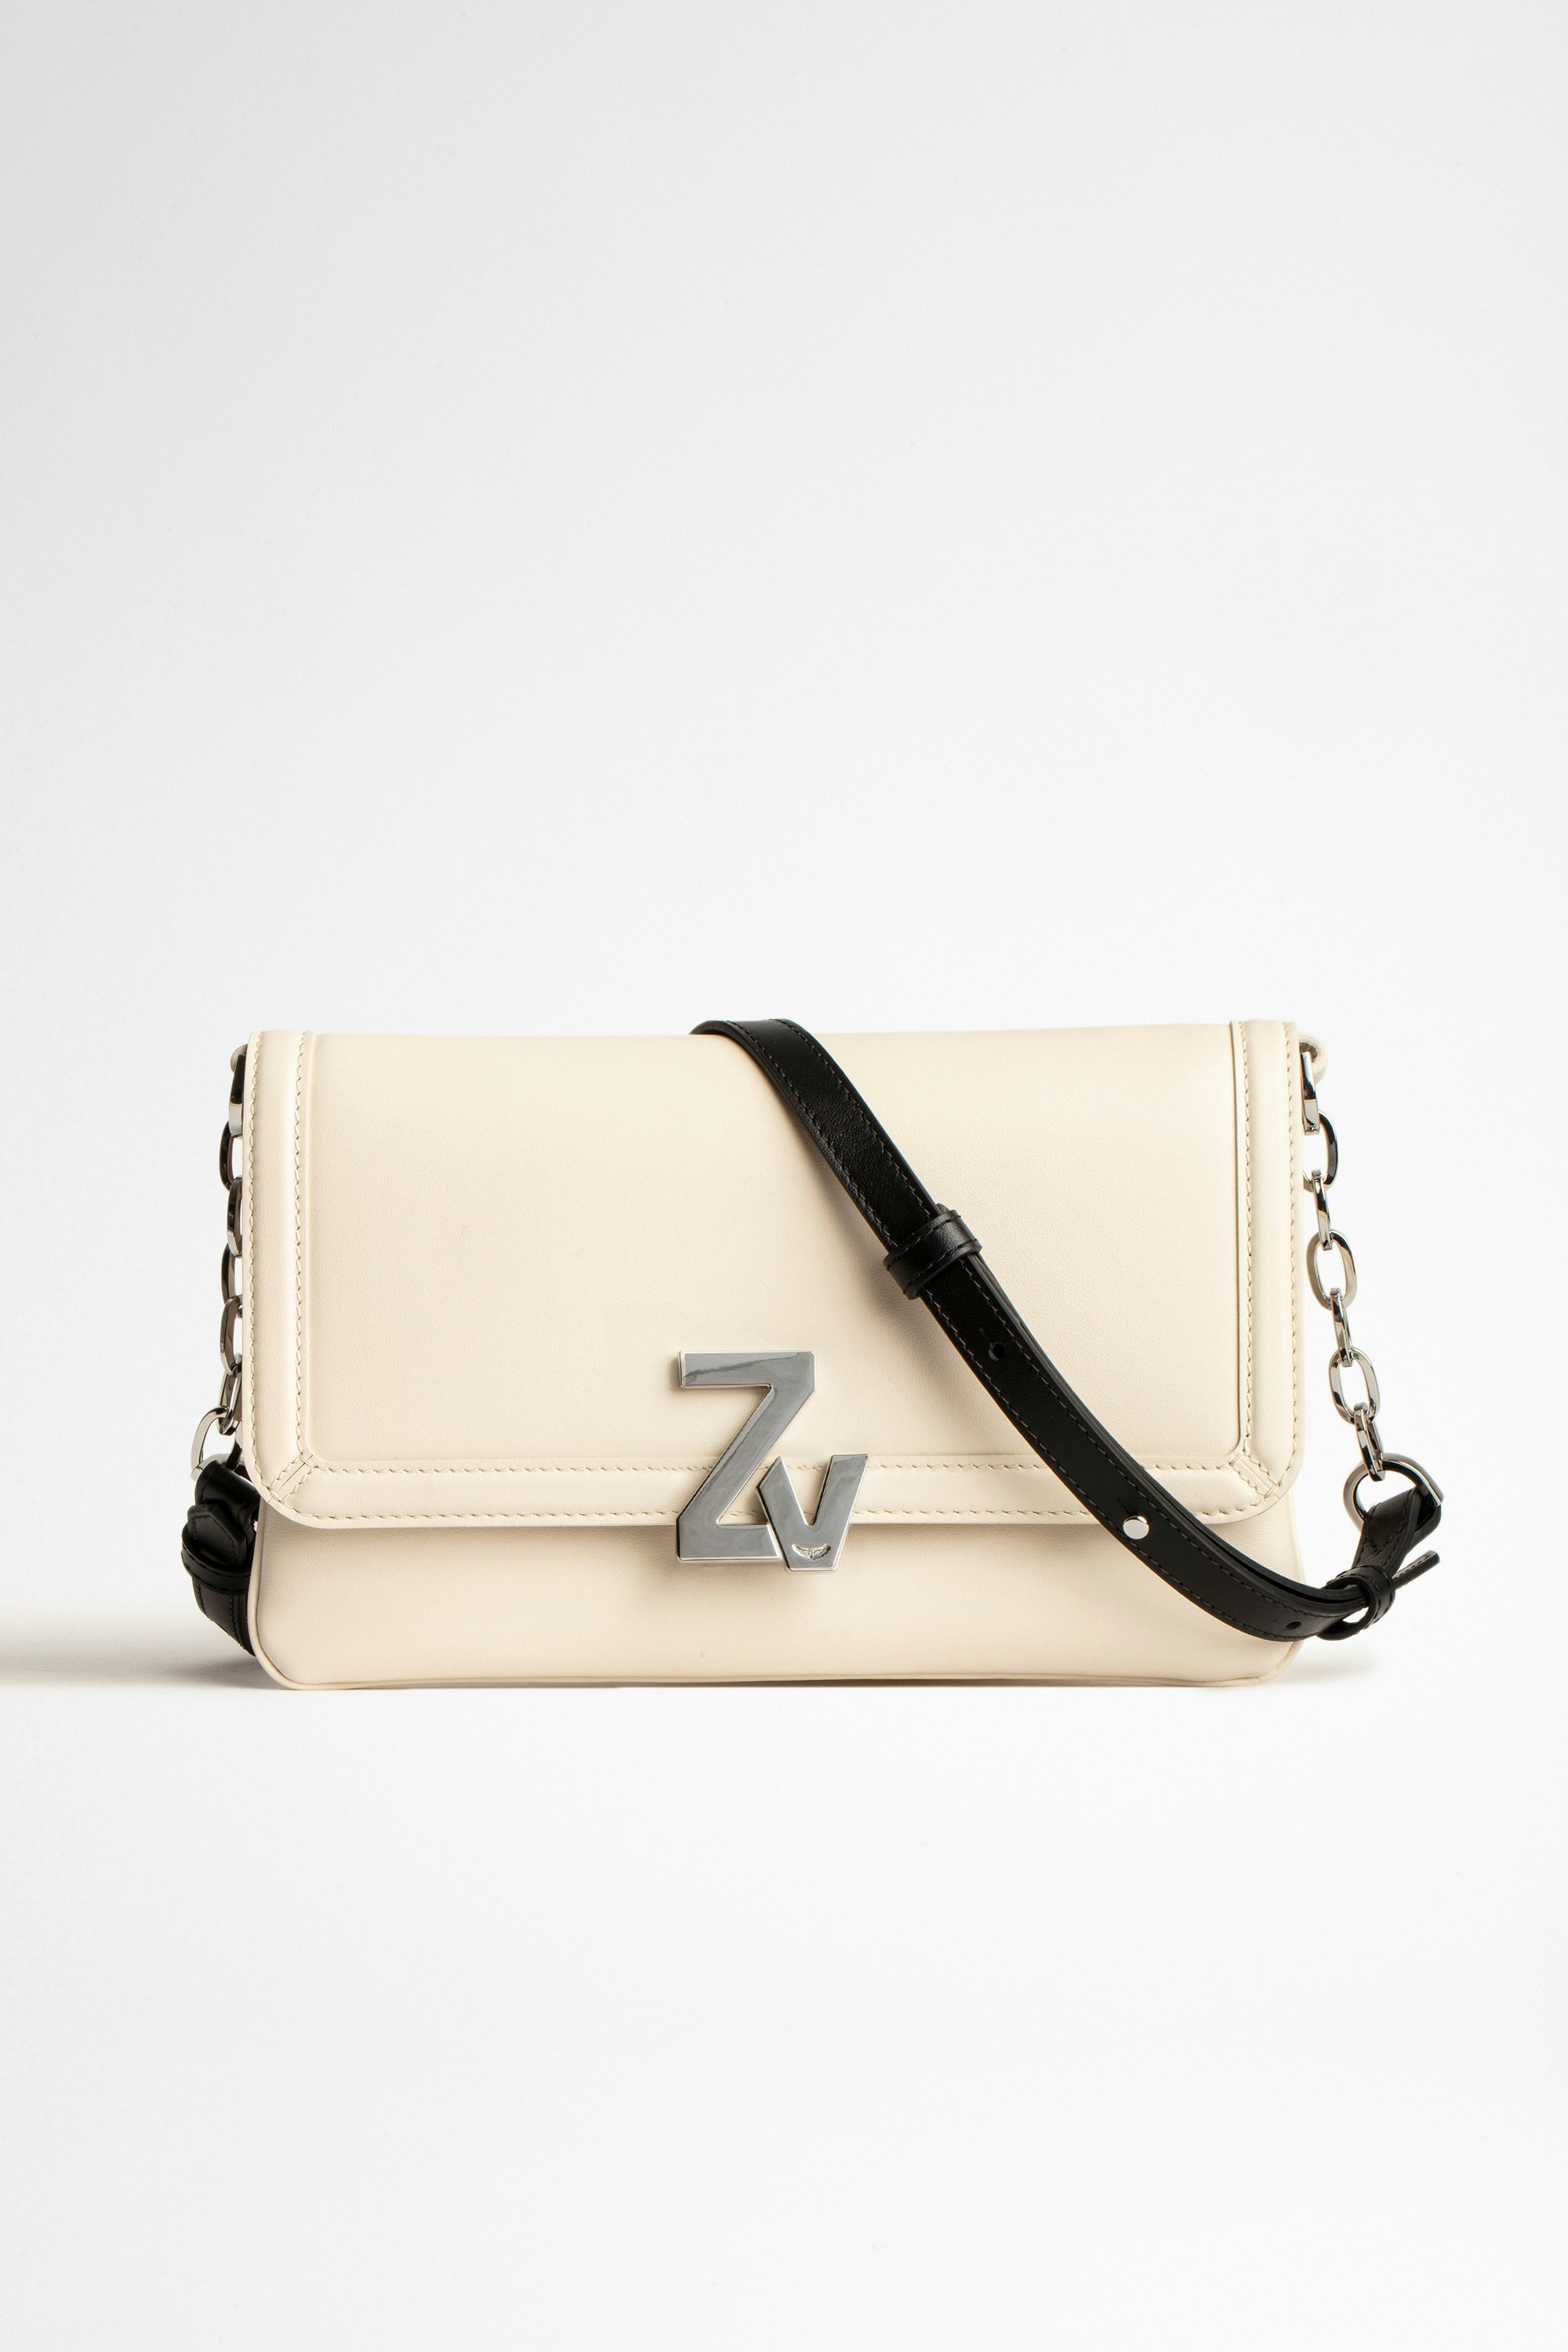 Tasche ZV Initiale La Clutch Damen-Clutch aus Glattleder mit ZV-Monogramm